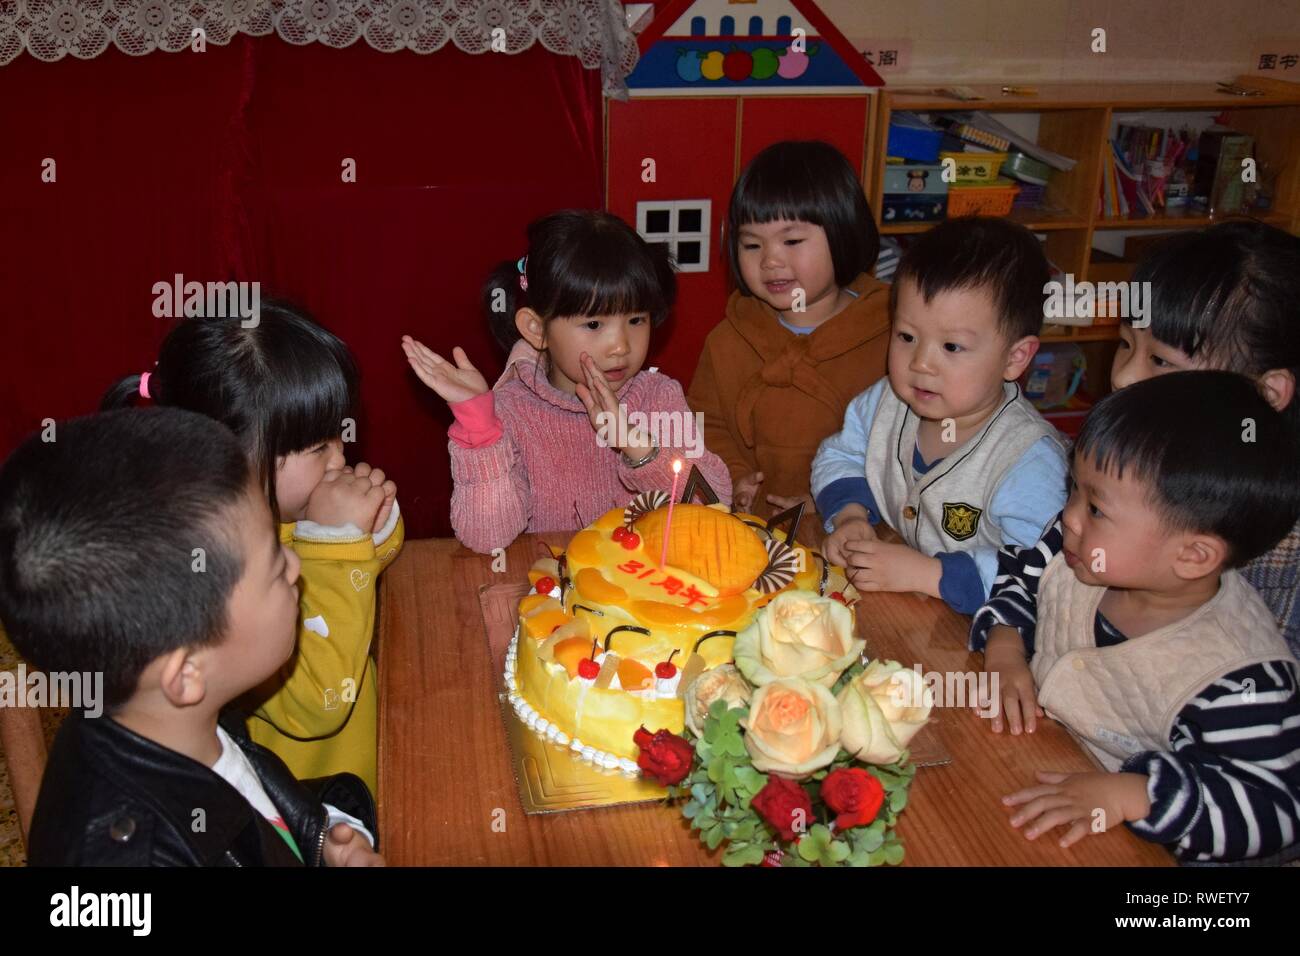 Canton Chine Circa 19 Mars Groupe D Enfants En Maternelle Assis Autour D Un Gateau D Anniversaire Pour Celebrer Un Anniversaire Photo Stock Alamy